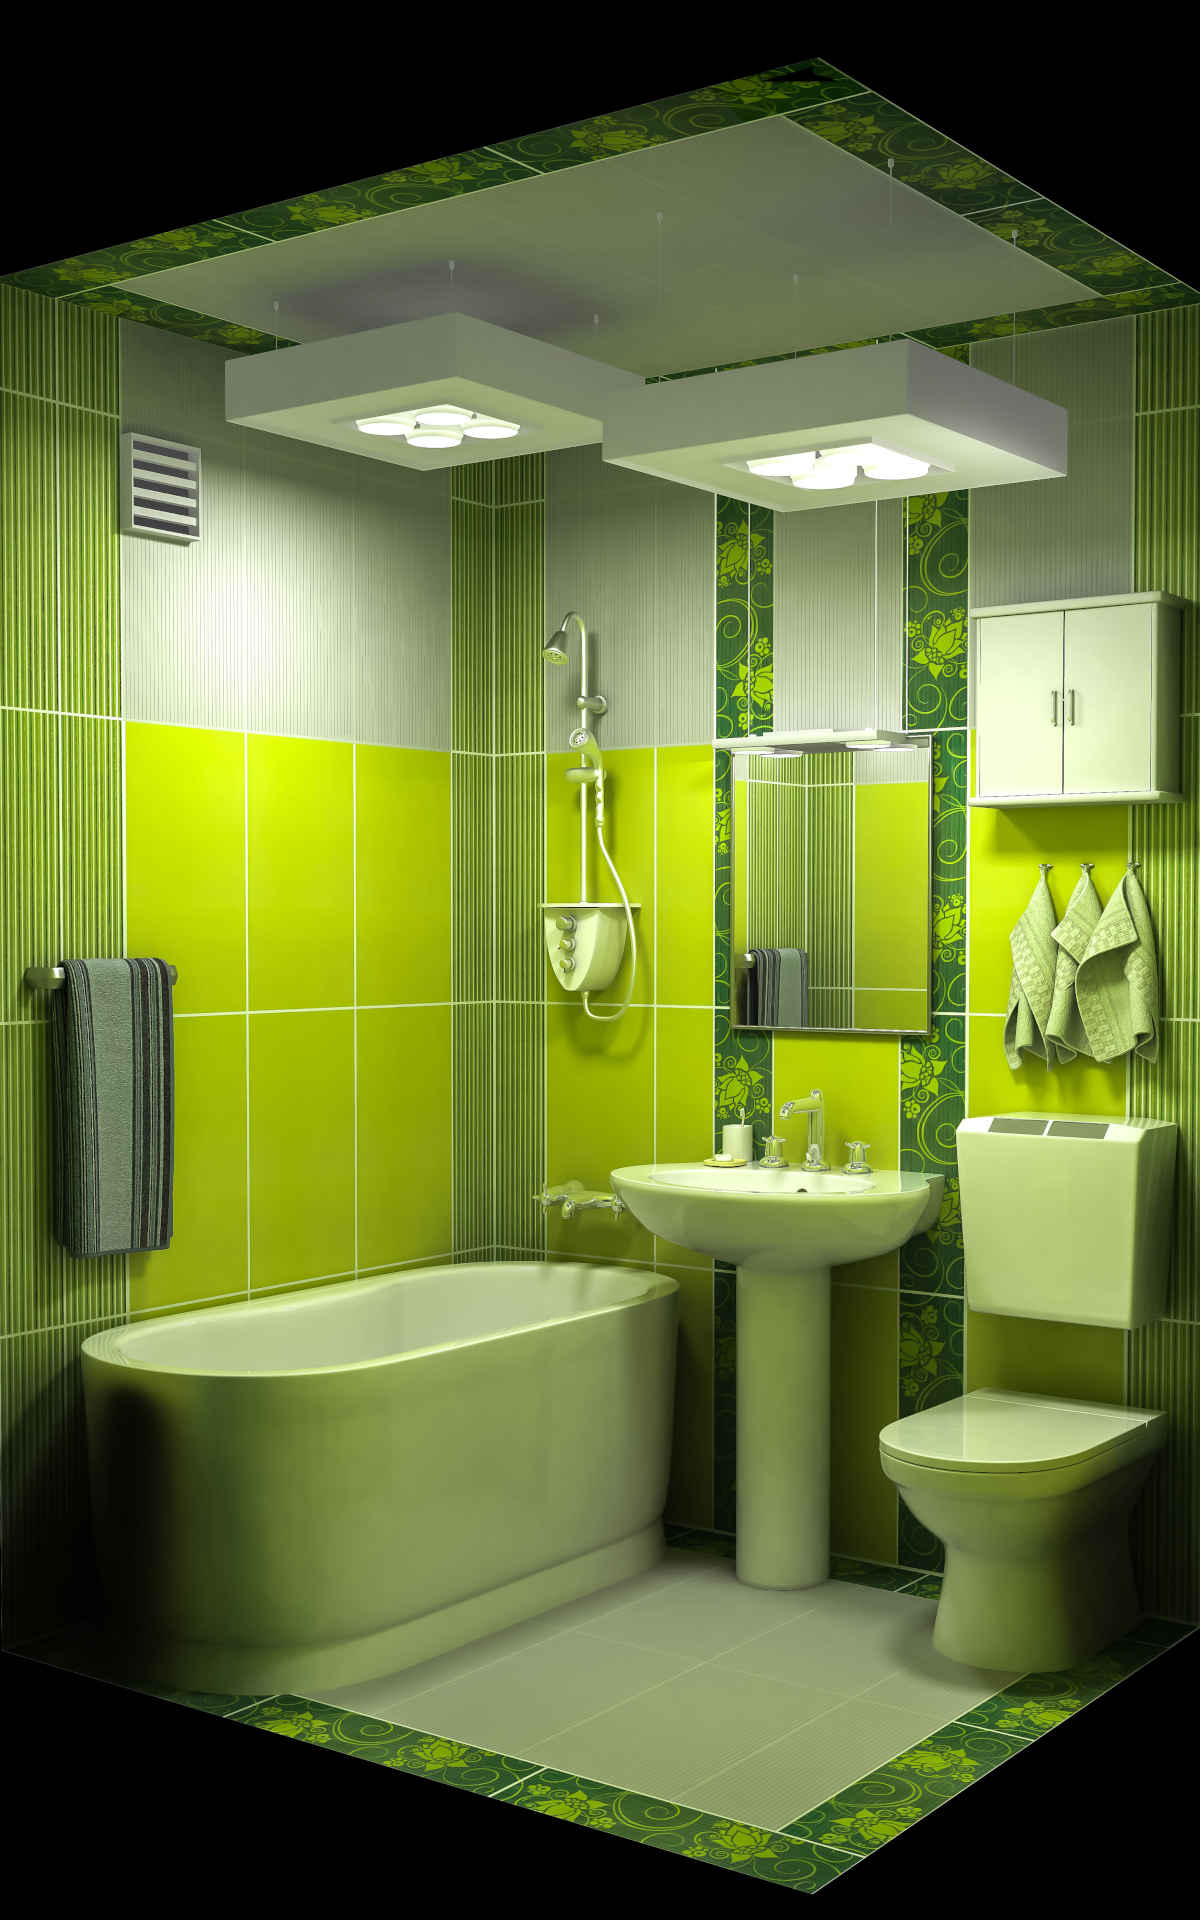 Рекомендации профессионалов по дизайну и планировке маленьких совмещенных ванных комнат